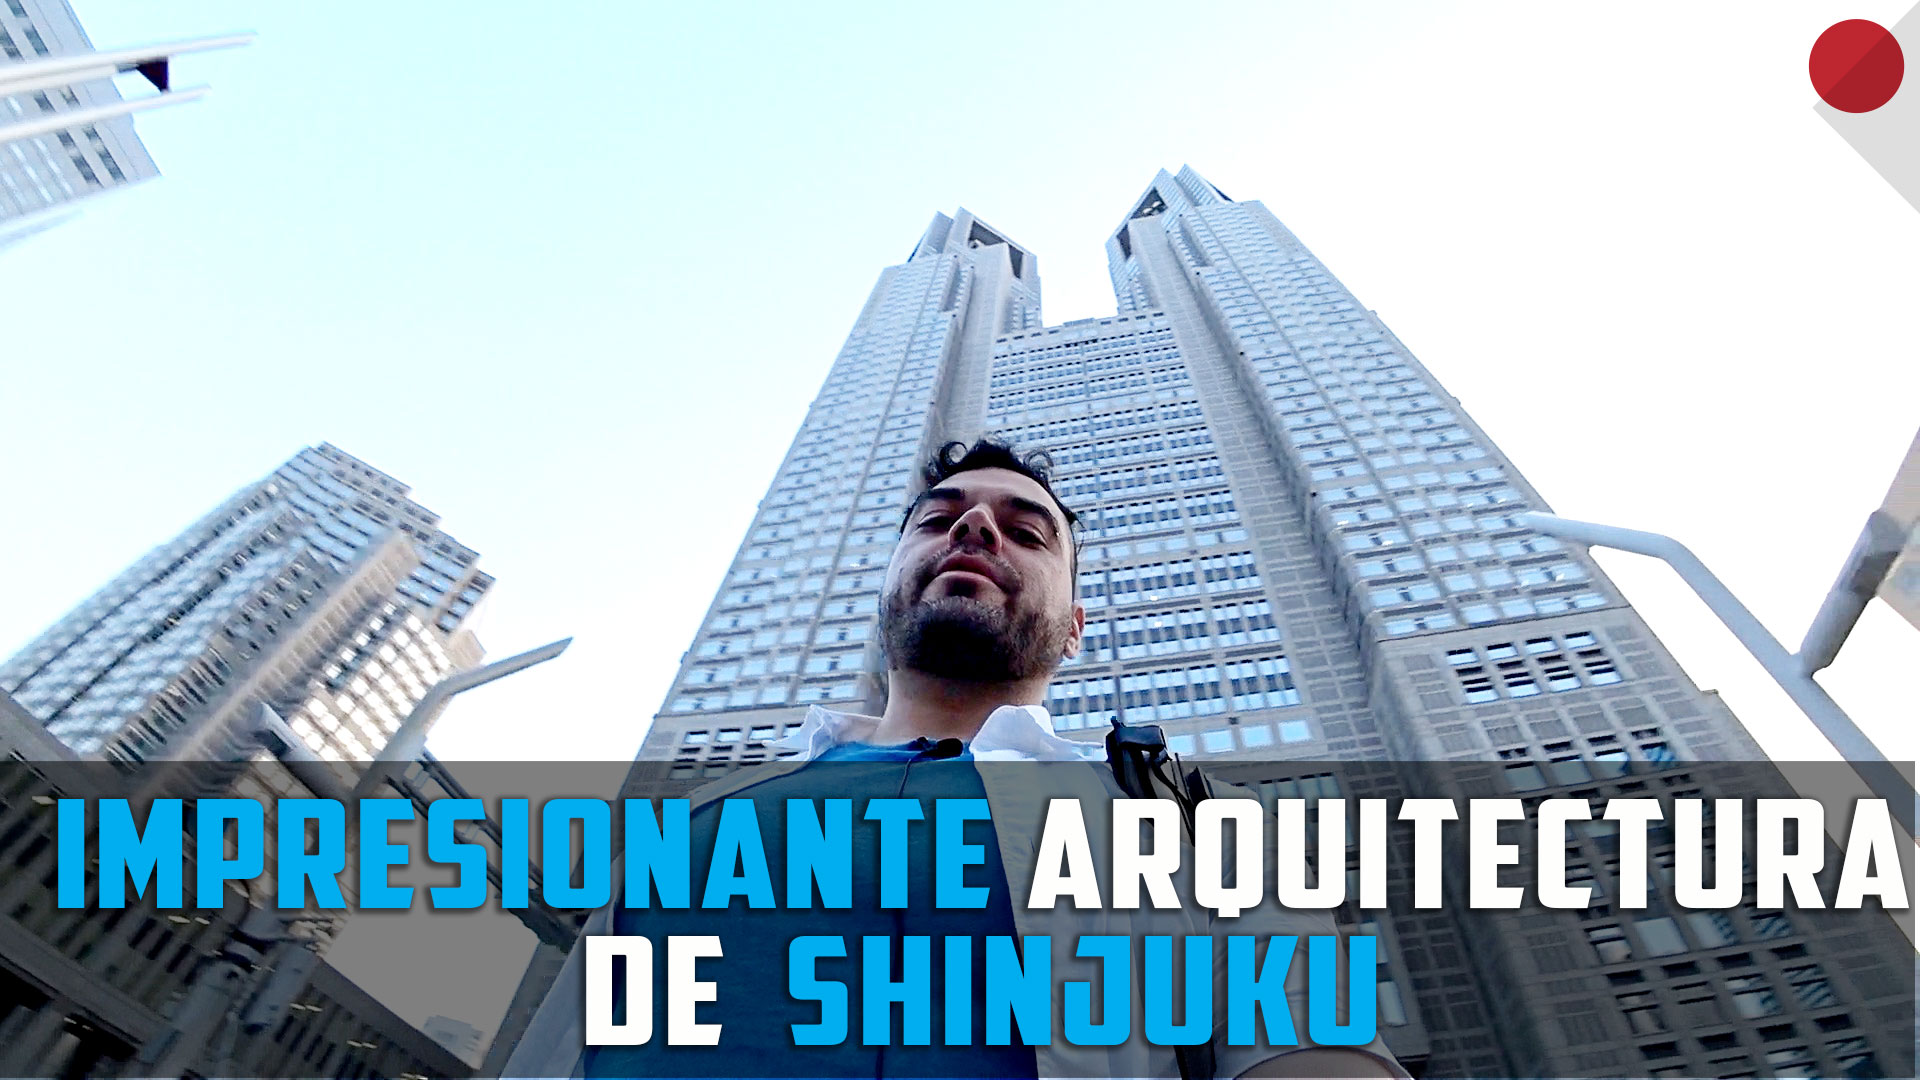 La impresionante arquitectura de Shinjuku